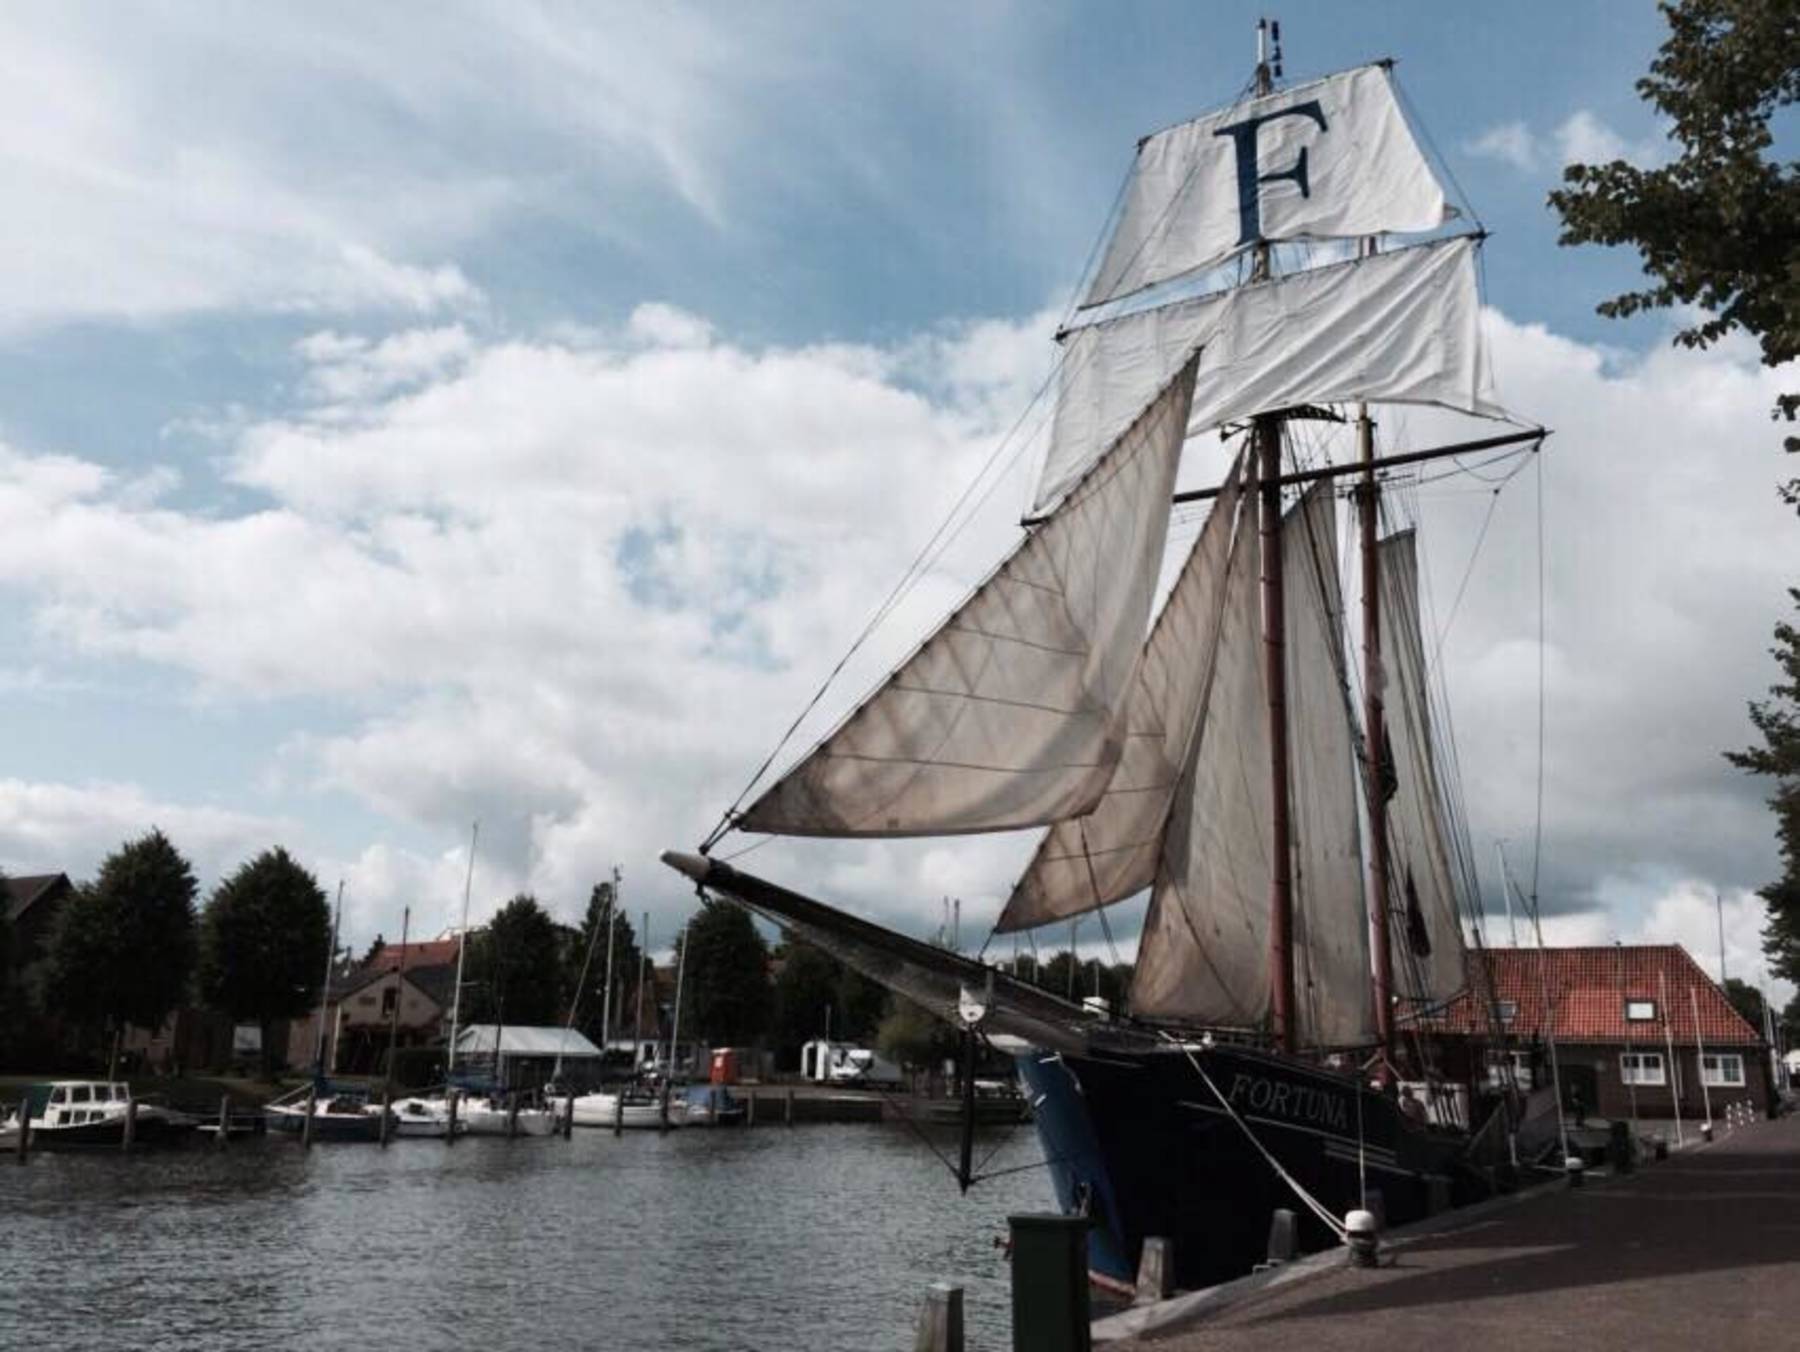 Weekend zeilen op het IJsselmeer vanuit Enkhuizen